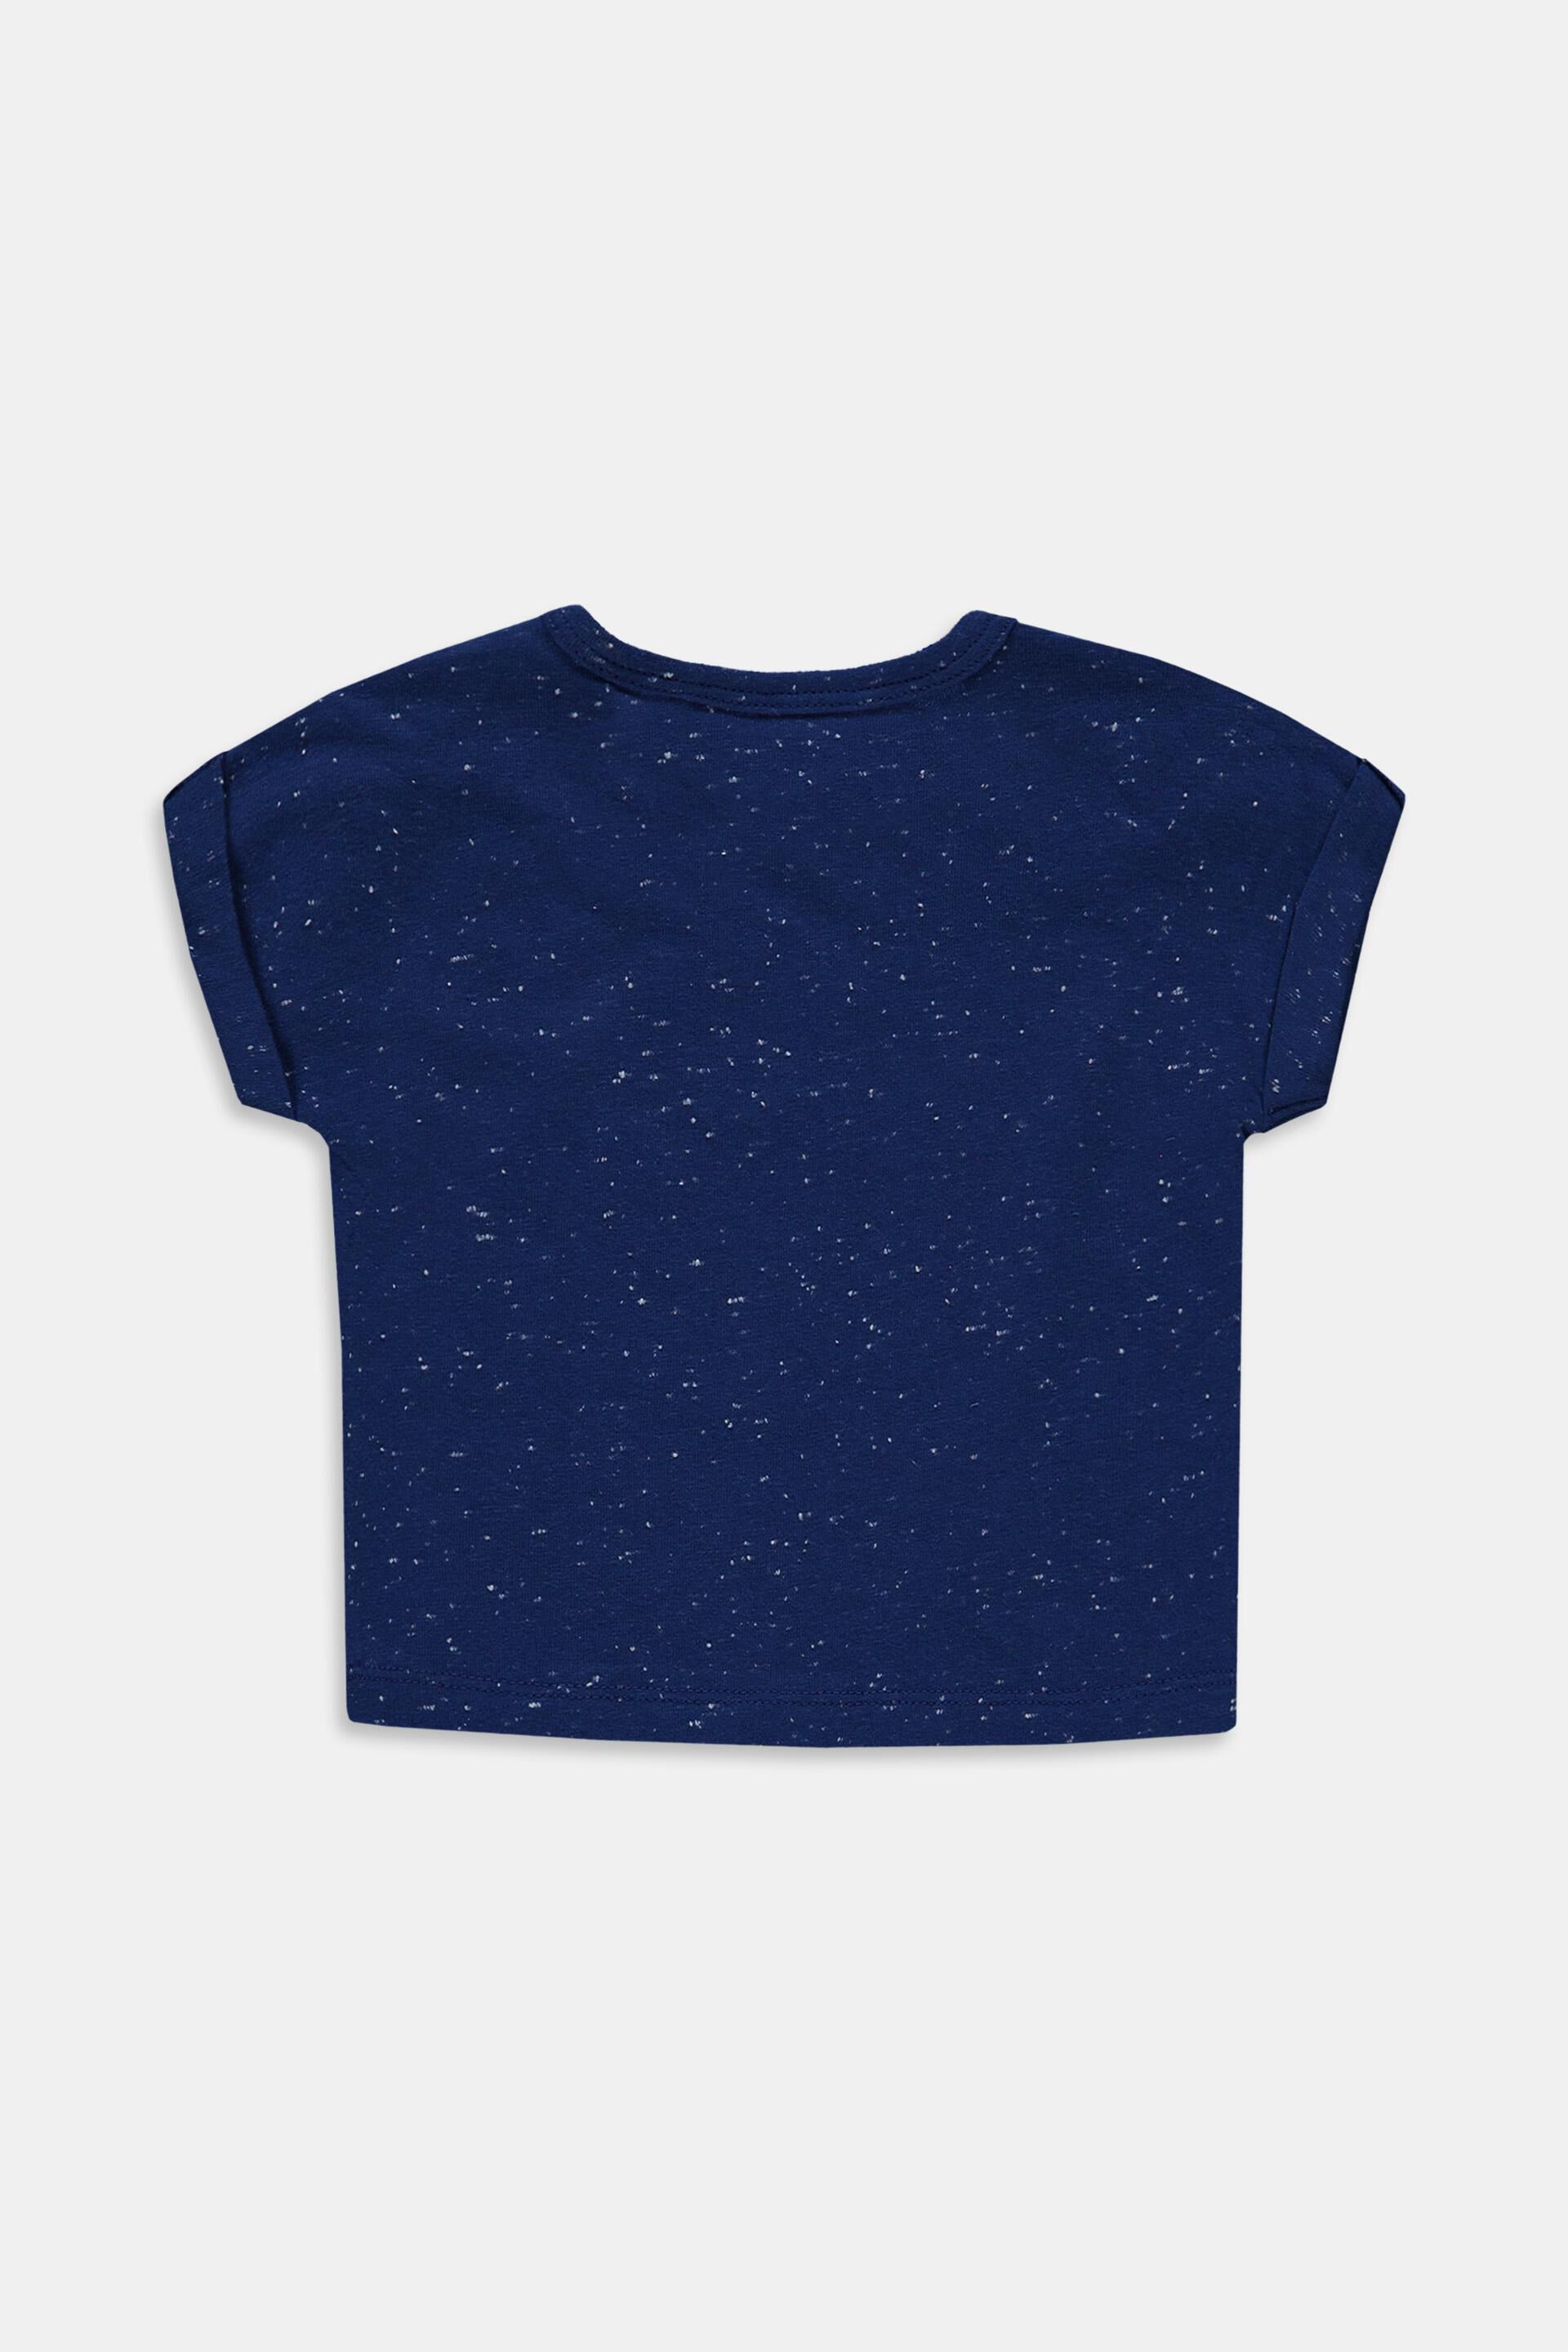 ESPRIT KIDS Baby-Mädchen Langarmshirt T-Shirt Ls